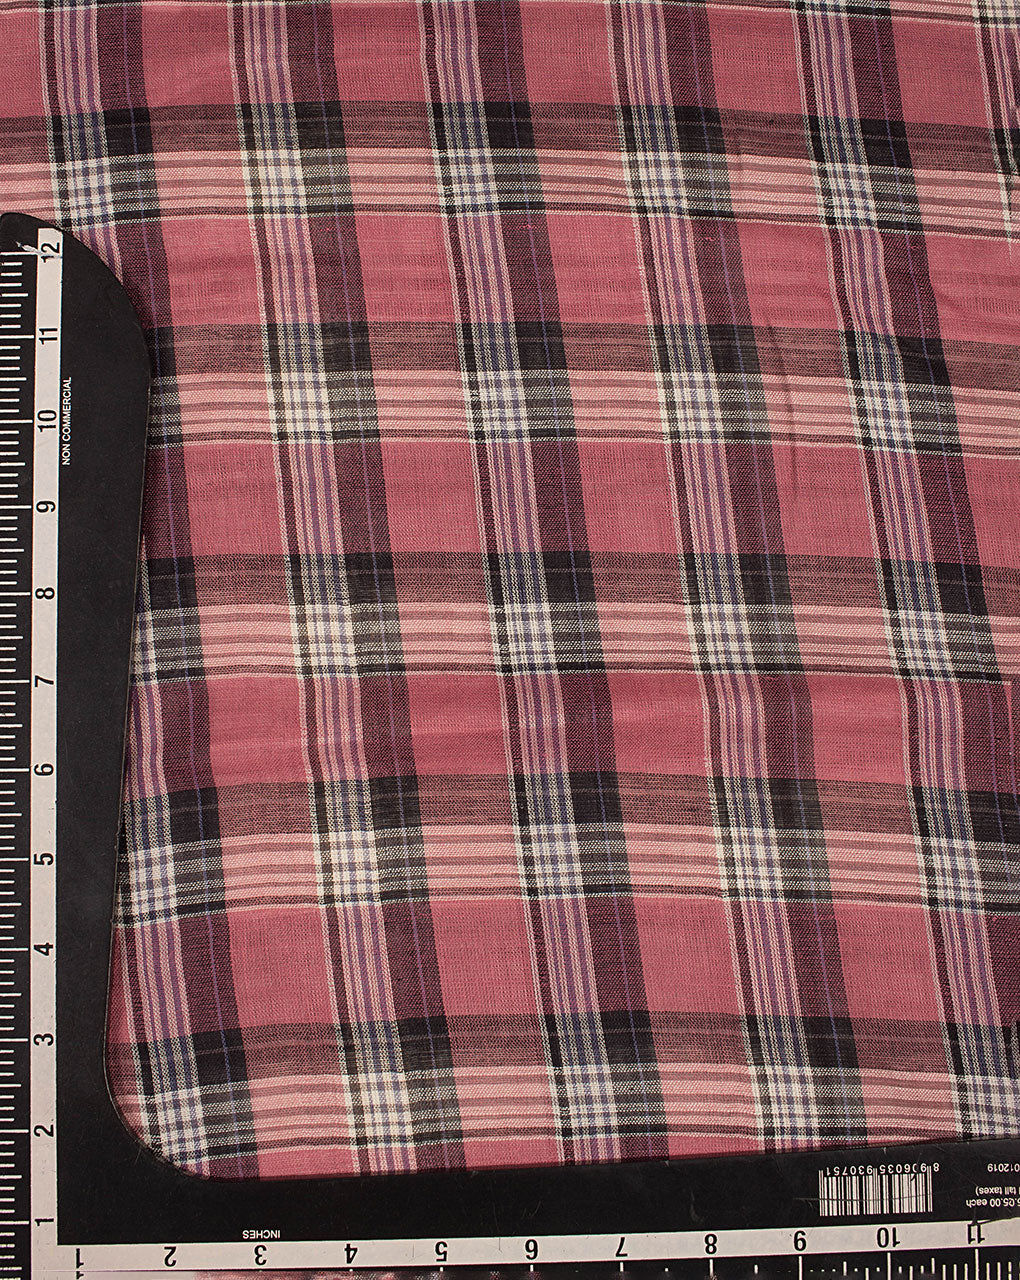 Tartan Checks Woven Reversible Cotton Fabric ( Width 56 Inch ) - Fabriclore.com